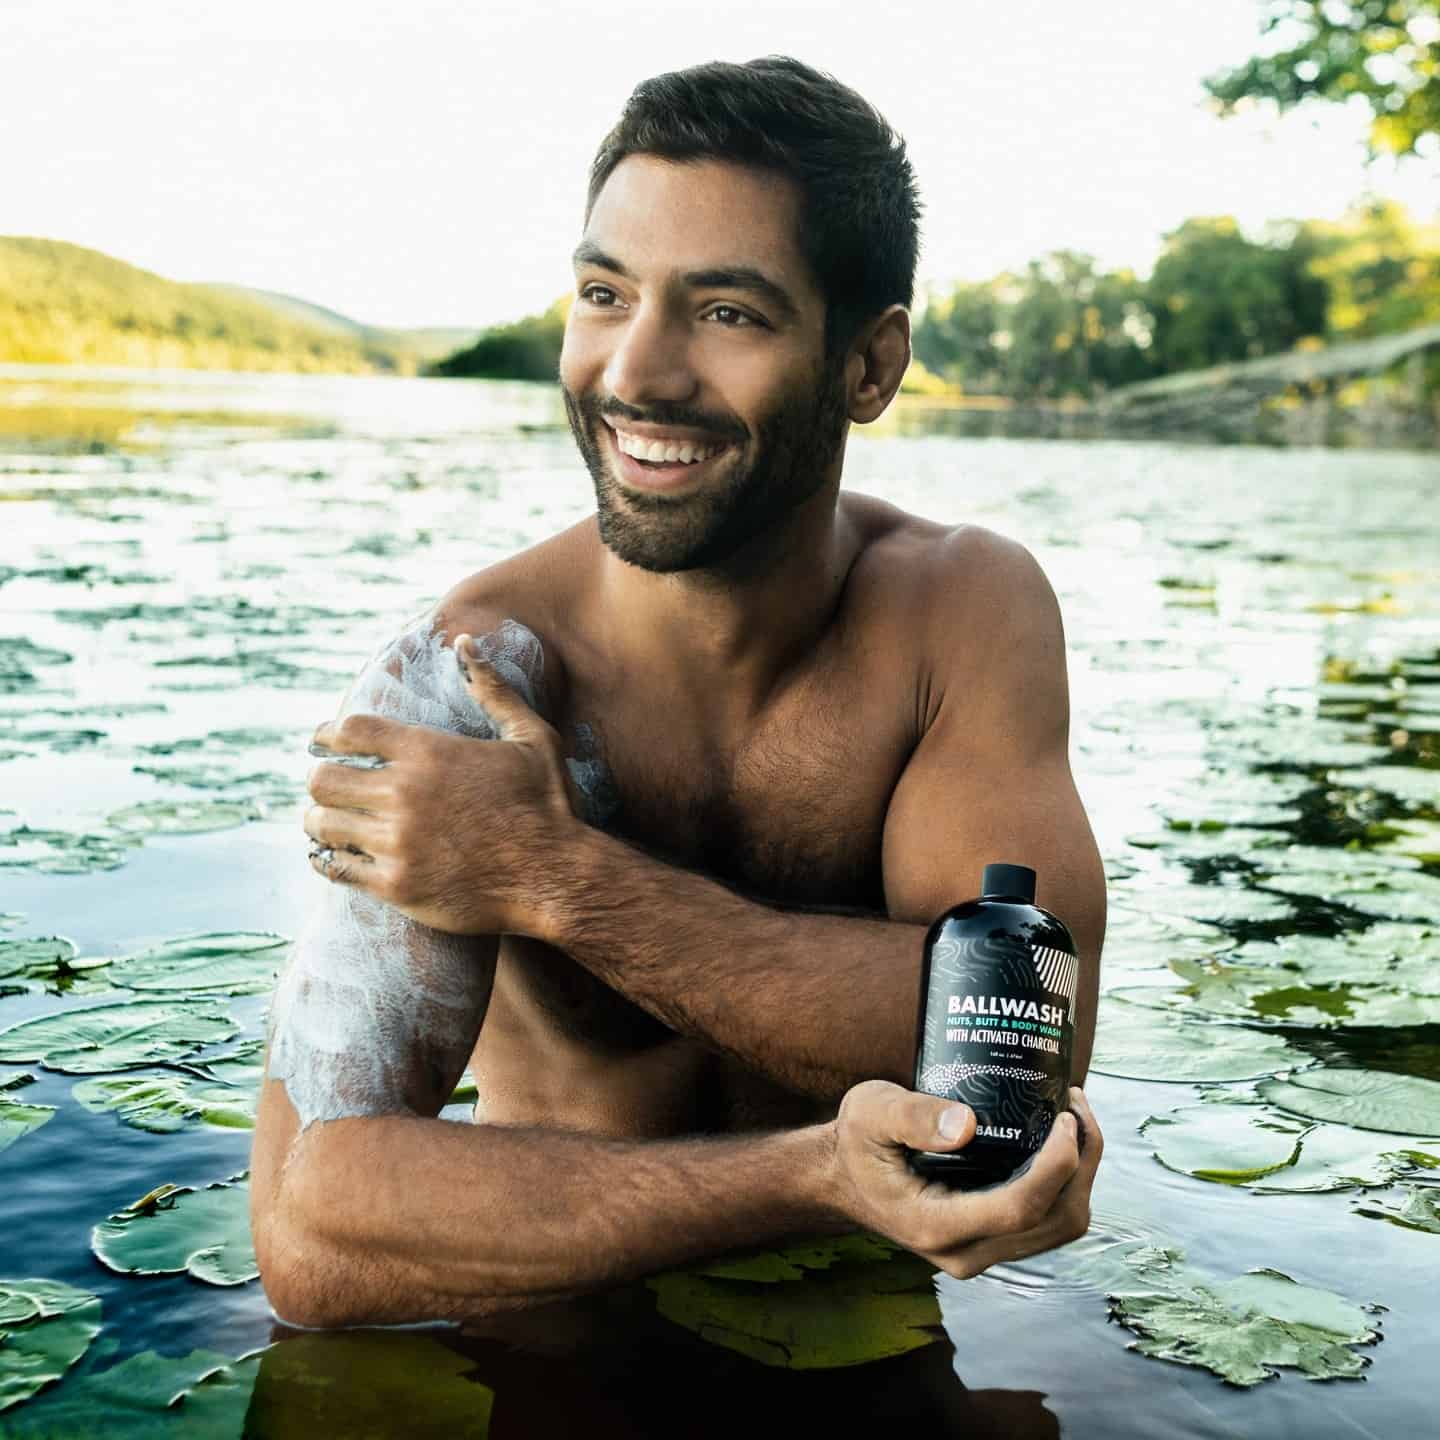 man washing his arm in a lake